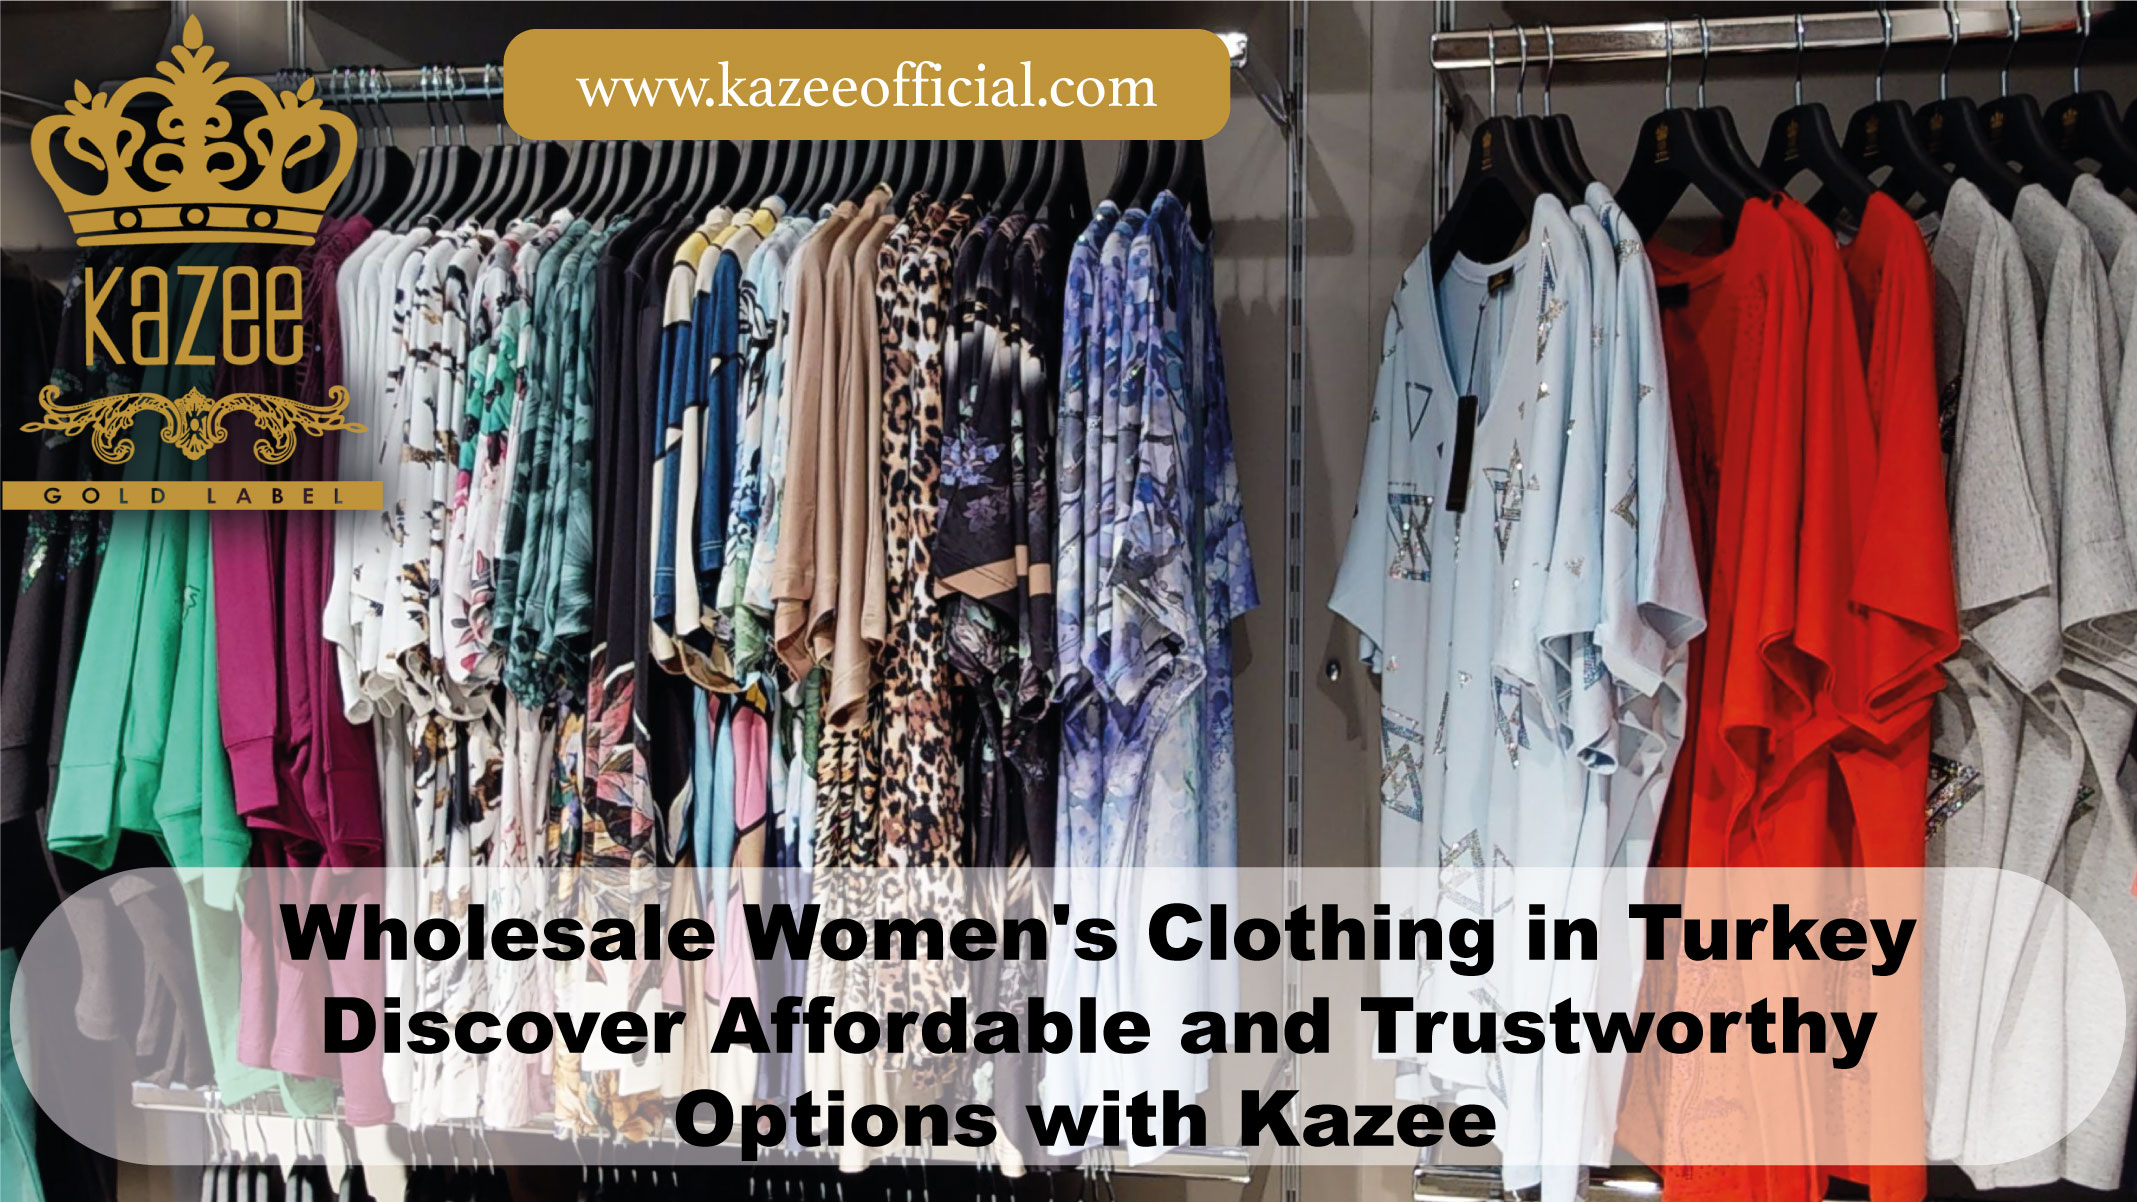 Großhandel für Damenbekleidung in der Türkei